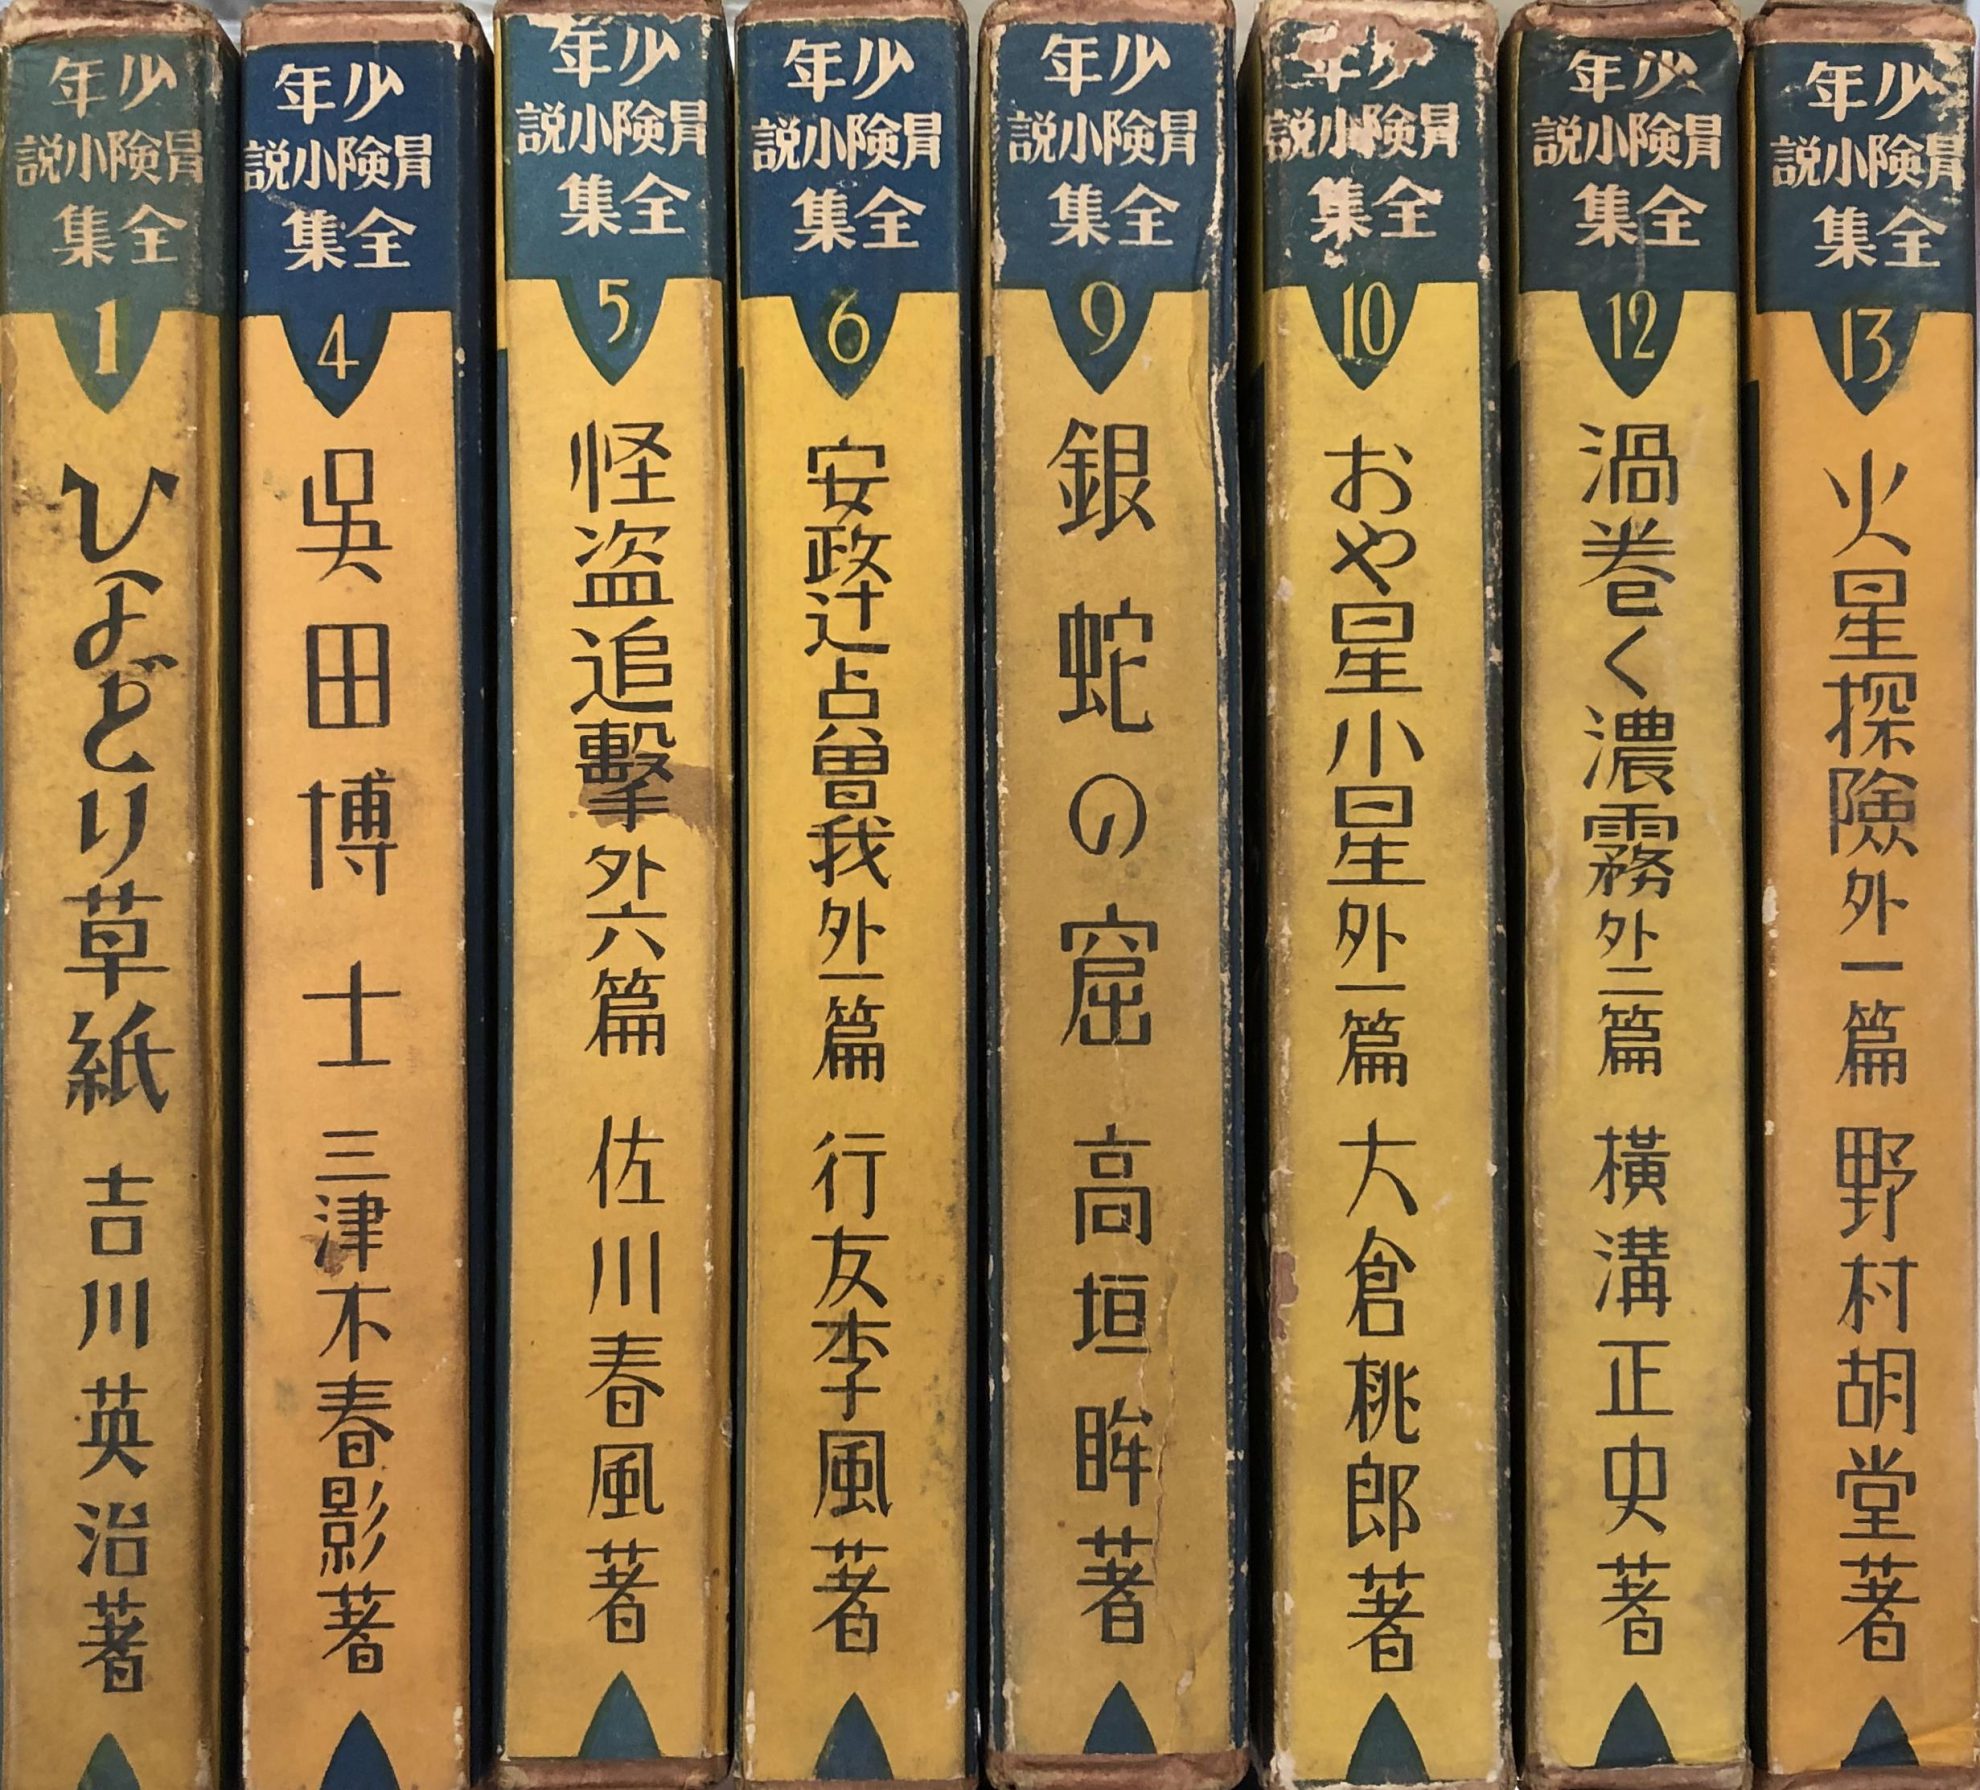 栃木県から戦前刊行『少年冒険小説全集』の古書を宅配買取いたしました | 東京神田神保町 愛書館中川書房の古本買取と古書出張買取